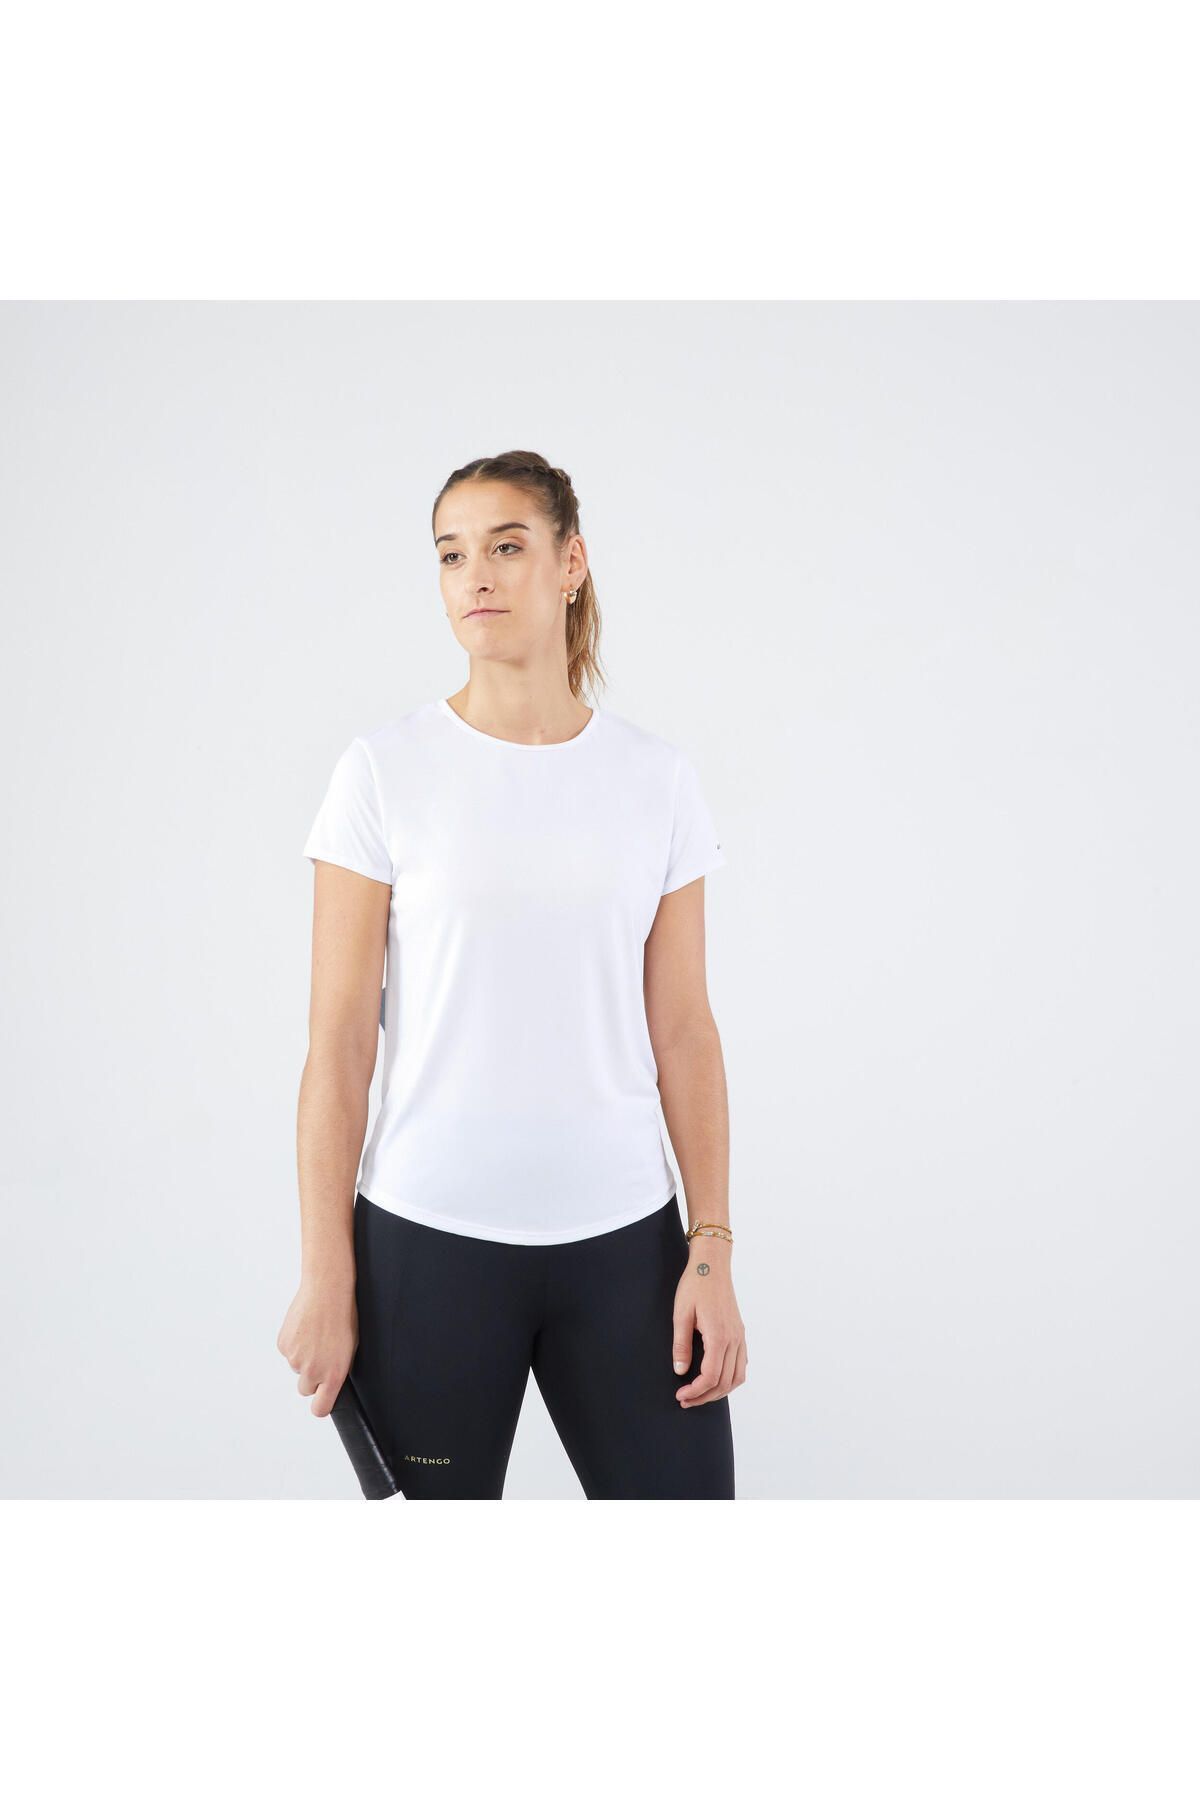 Decathlon Kadın Tenis Tişörtü - Beyaz - Essentiel 100